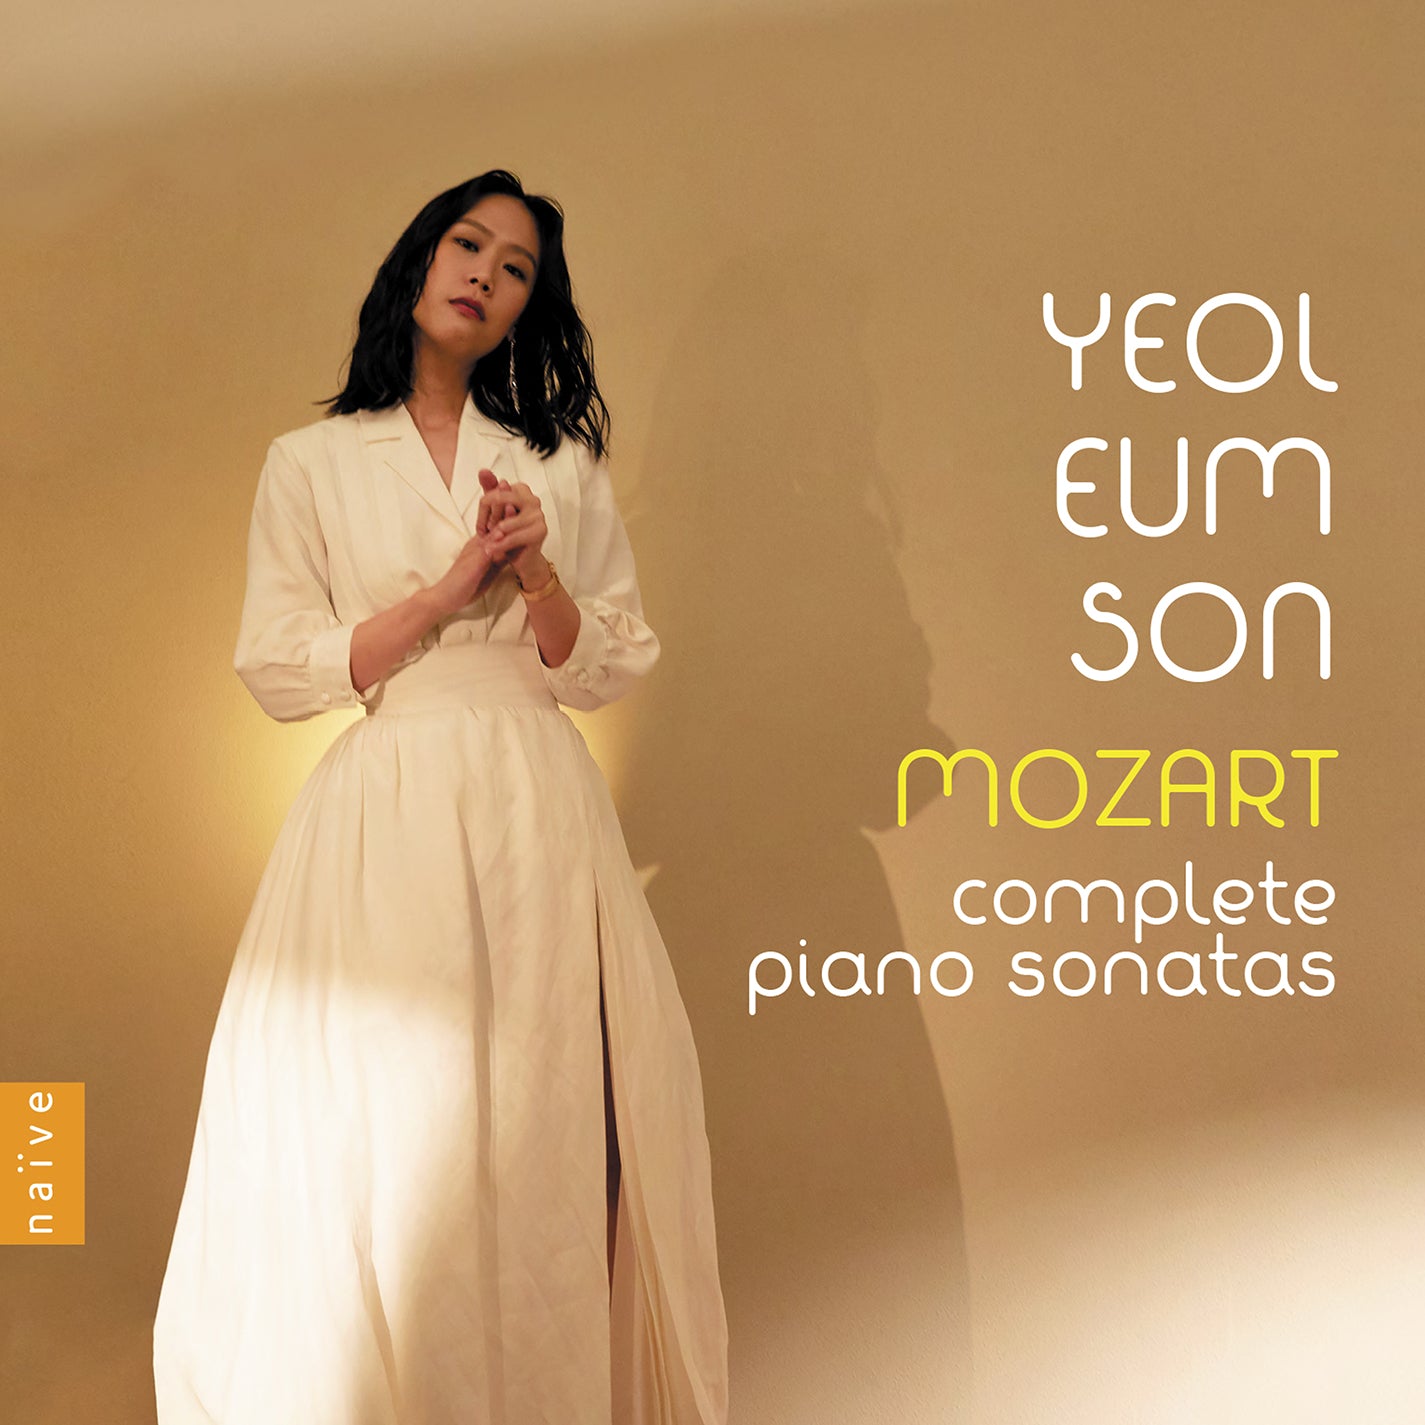 Mozart: Complete Piano Sonatas / Yeol Eum Son